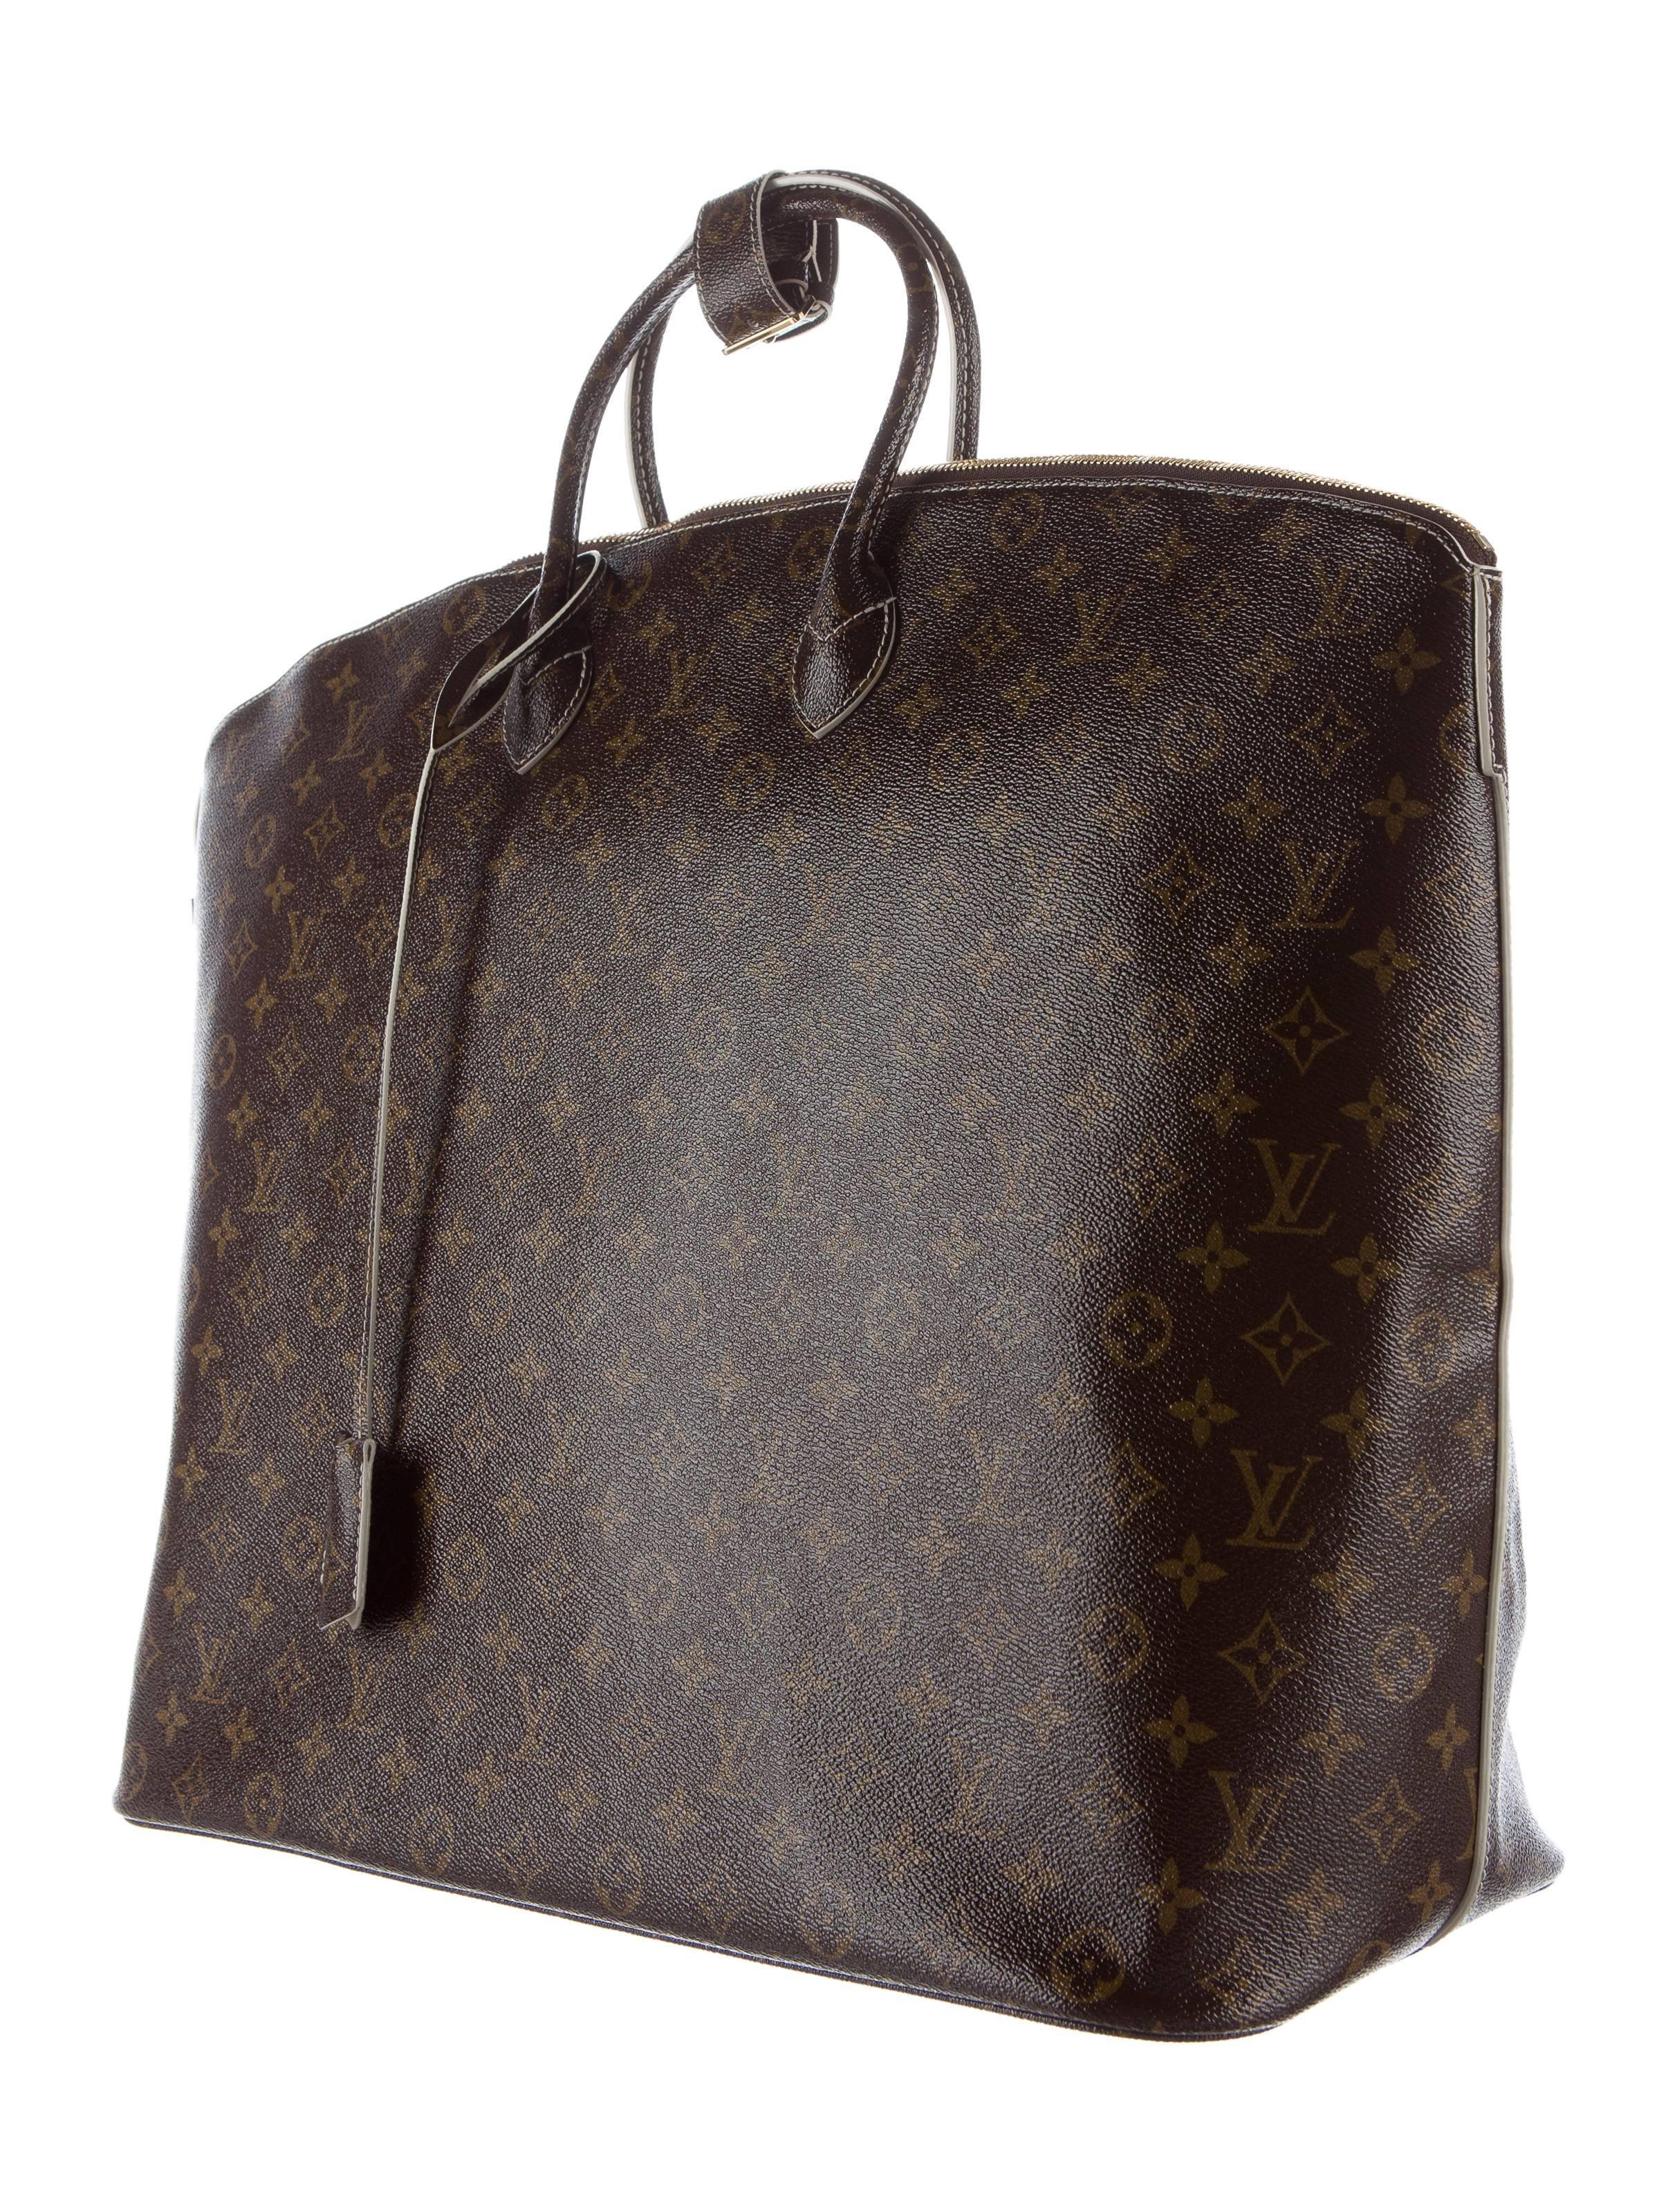 Louis Vuitton Monogram Men's Women's Carryall Duffle Top Handle Travel Tote Bag 1